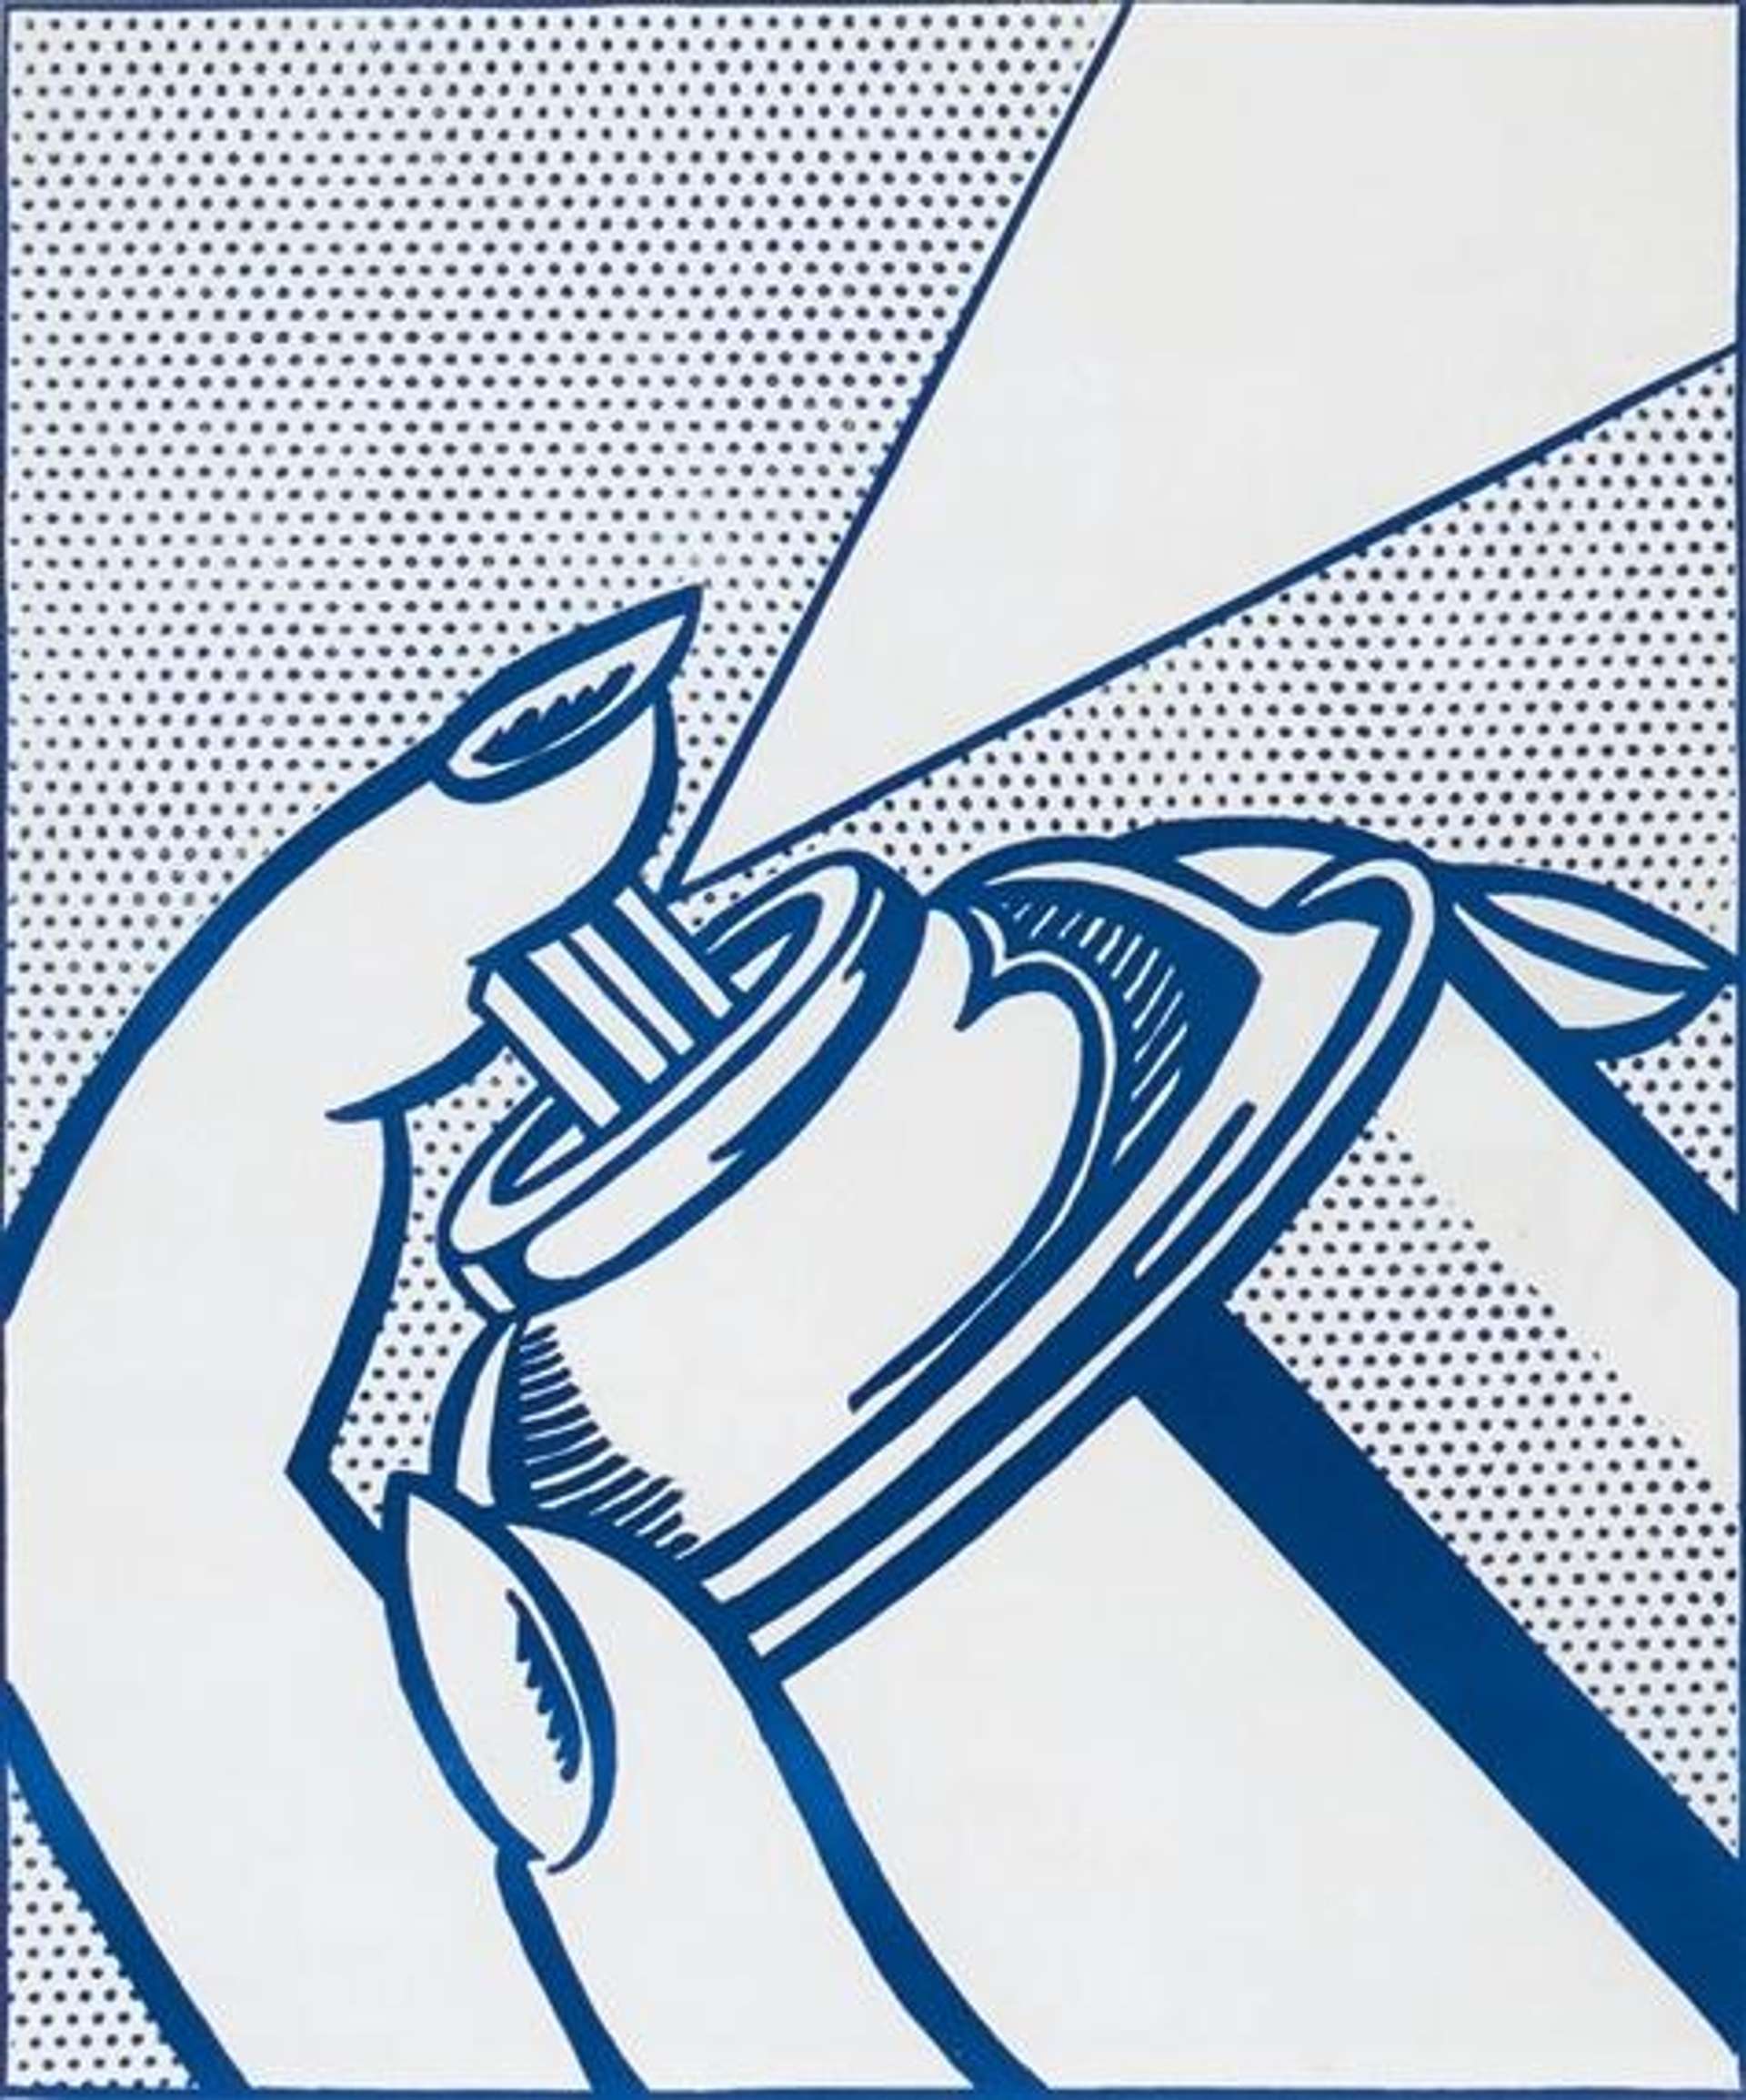 Roy Lichtenstein: Spray Can - Signed Print